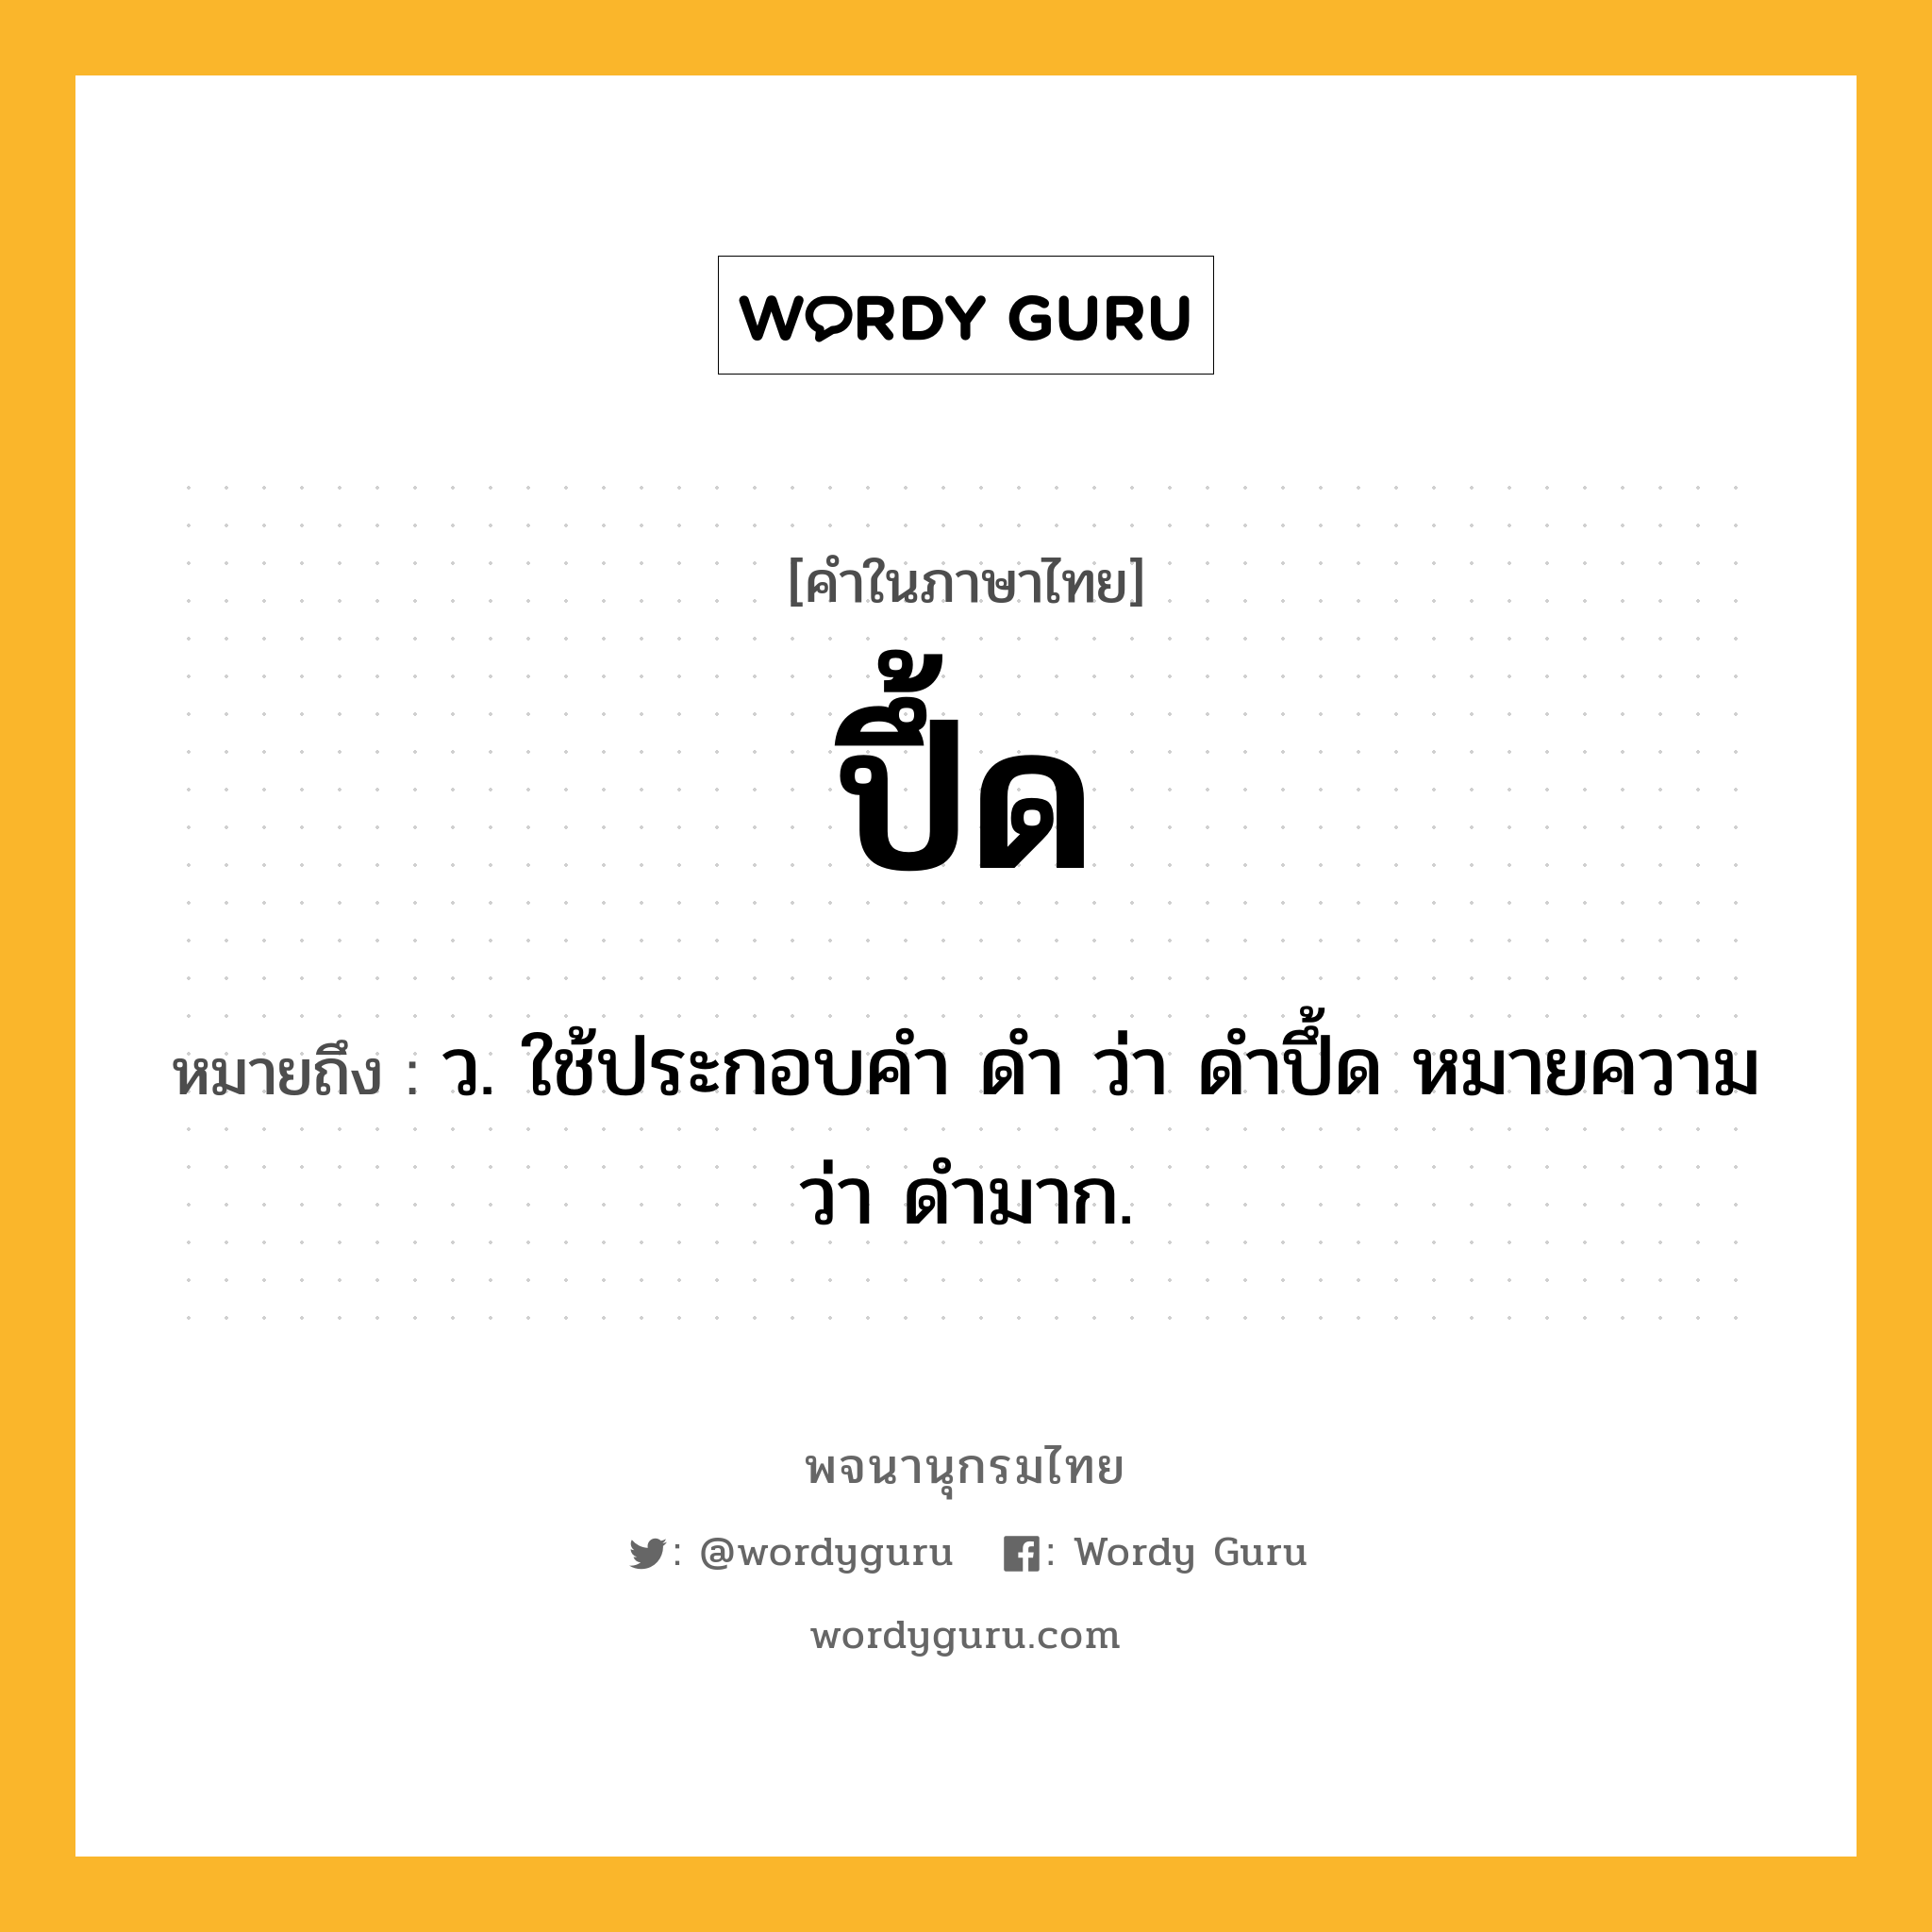 ปึ้ด หมายถึงอะไร?, คำในภาษาไทย ปึ้ด หมายถึง ว. ใช้ประกอบคํา ดํา ว่า ดําปึ้ด หมายความว่า ดํามาก.